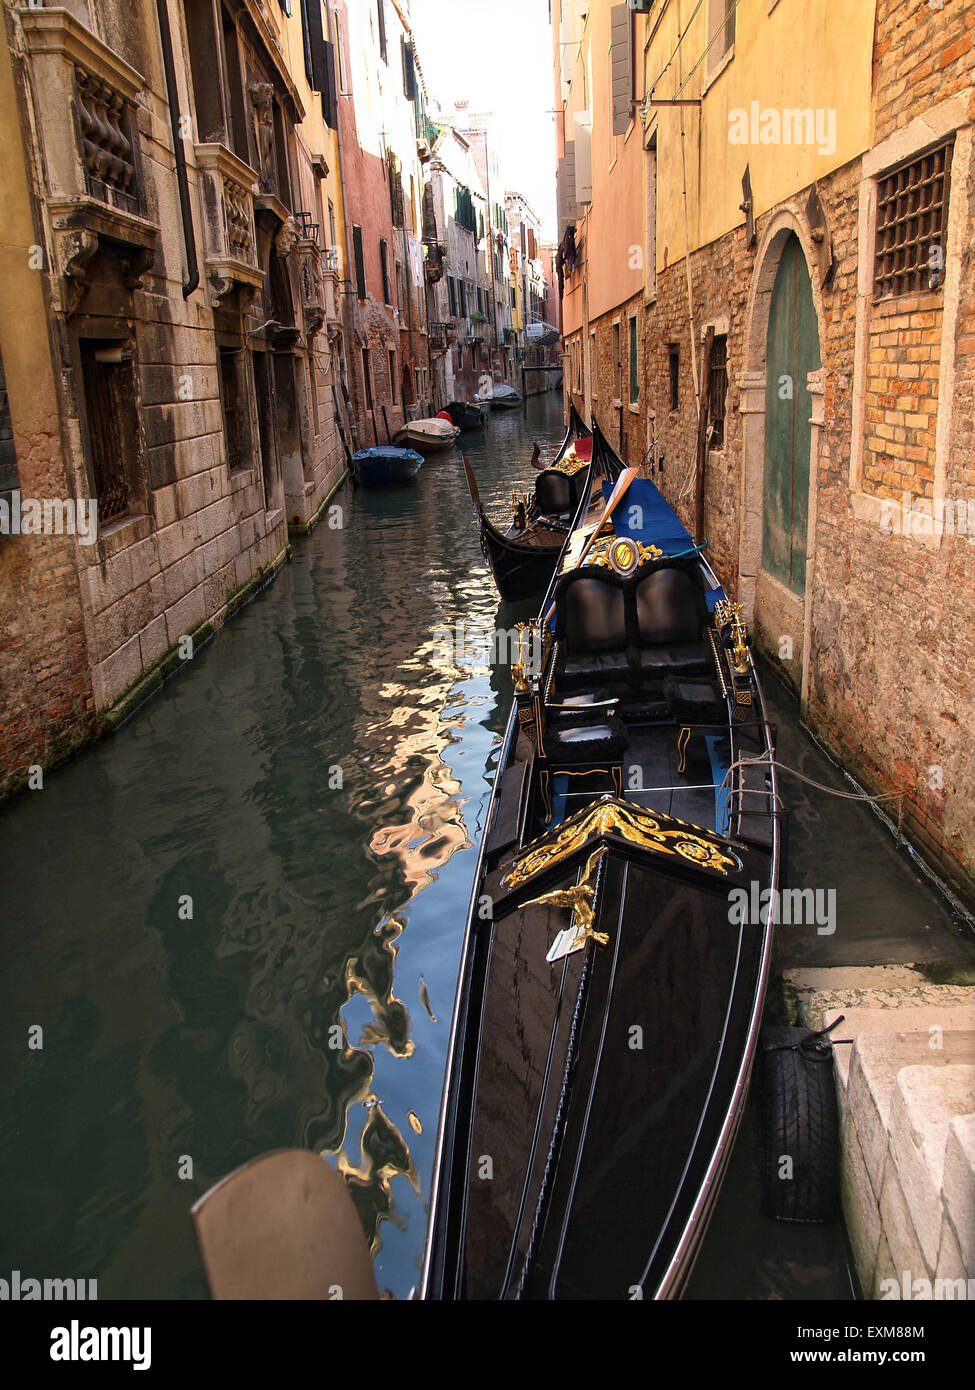 Vista di un vuoto gondola ormeggiata in uno stretto canale nella città di Venezia con belle case sui lati. Venezia. L'Italia. Foto Stock